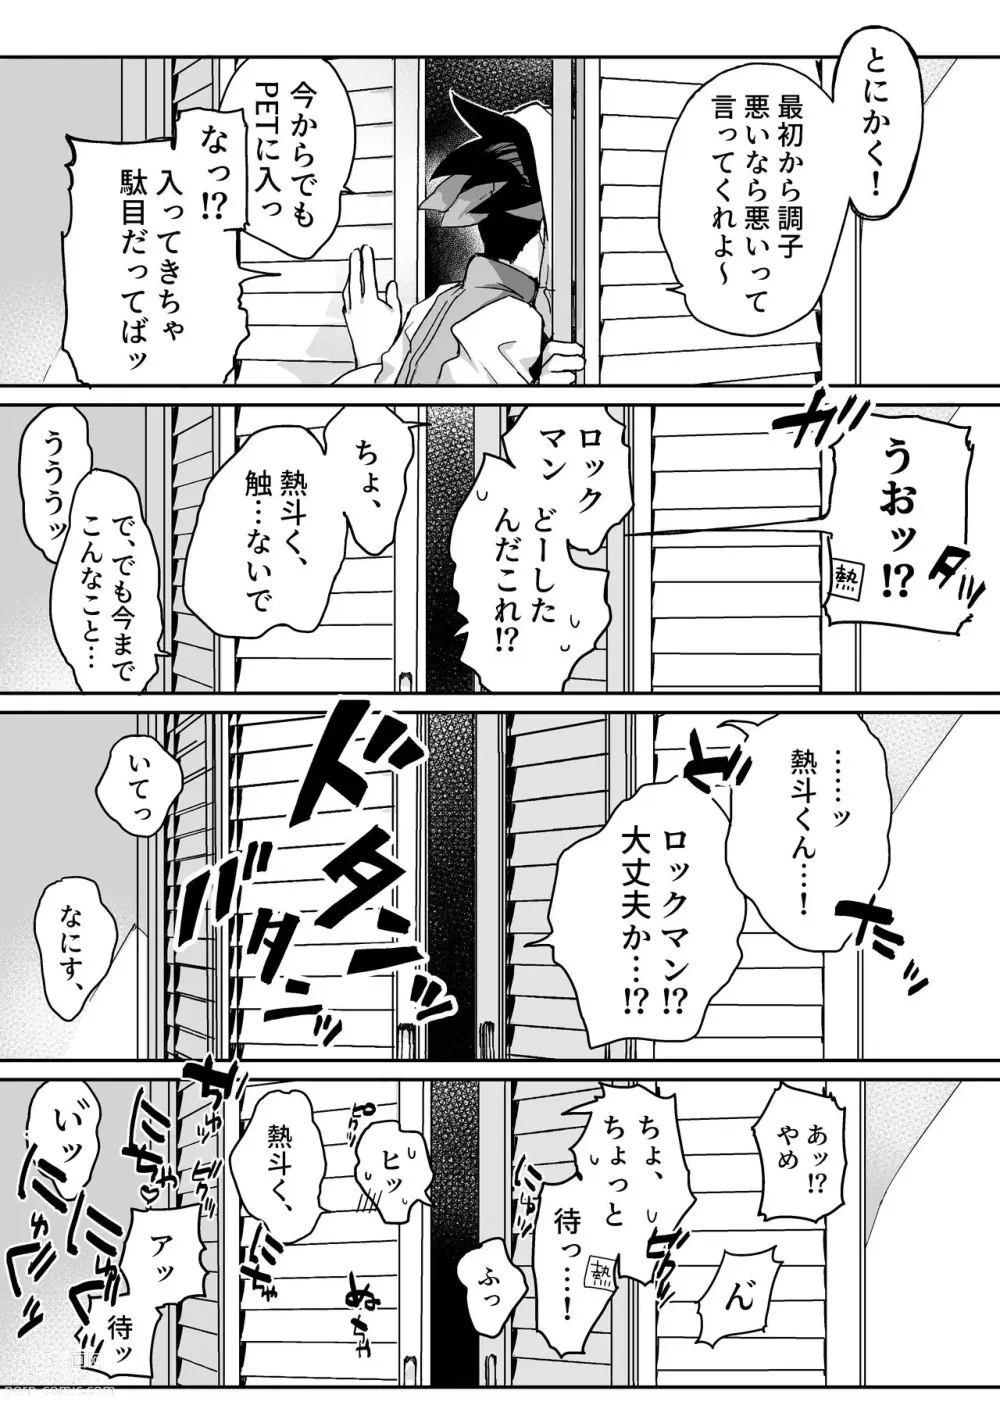 Page 4 of doujinshi Kimiiro Kokoro Window